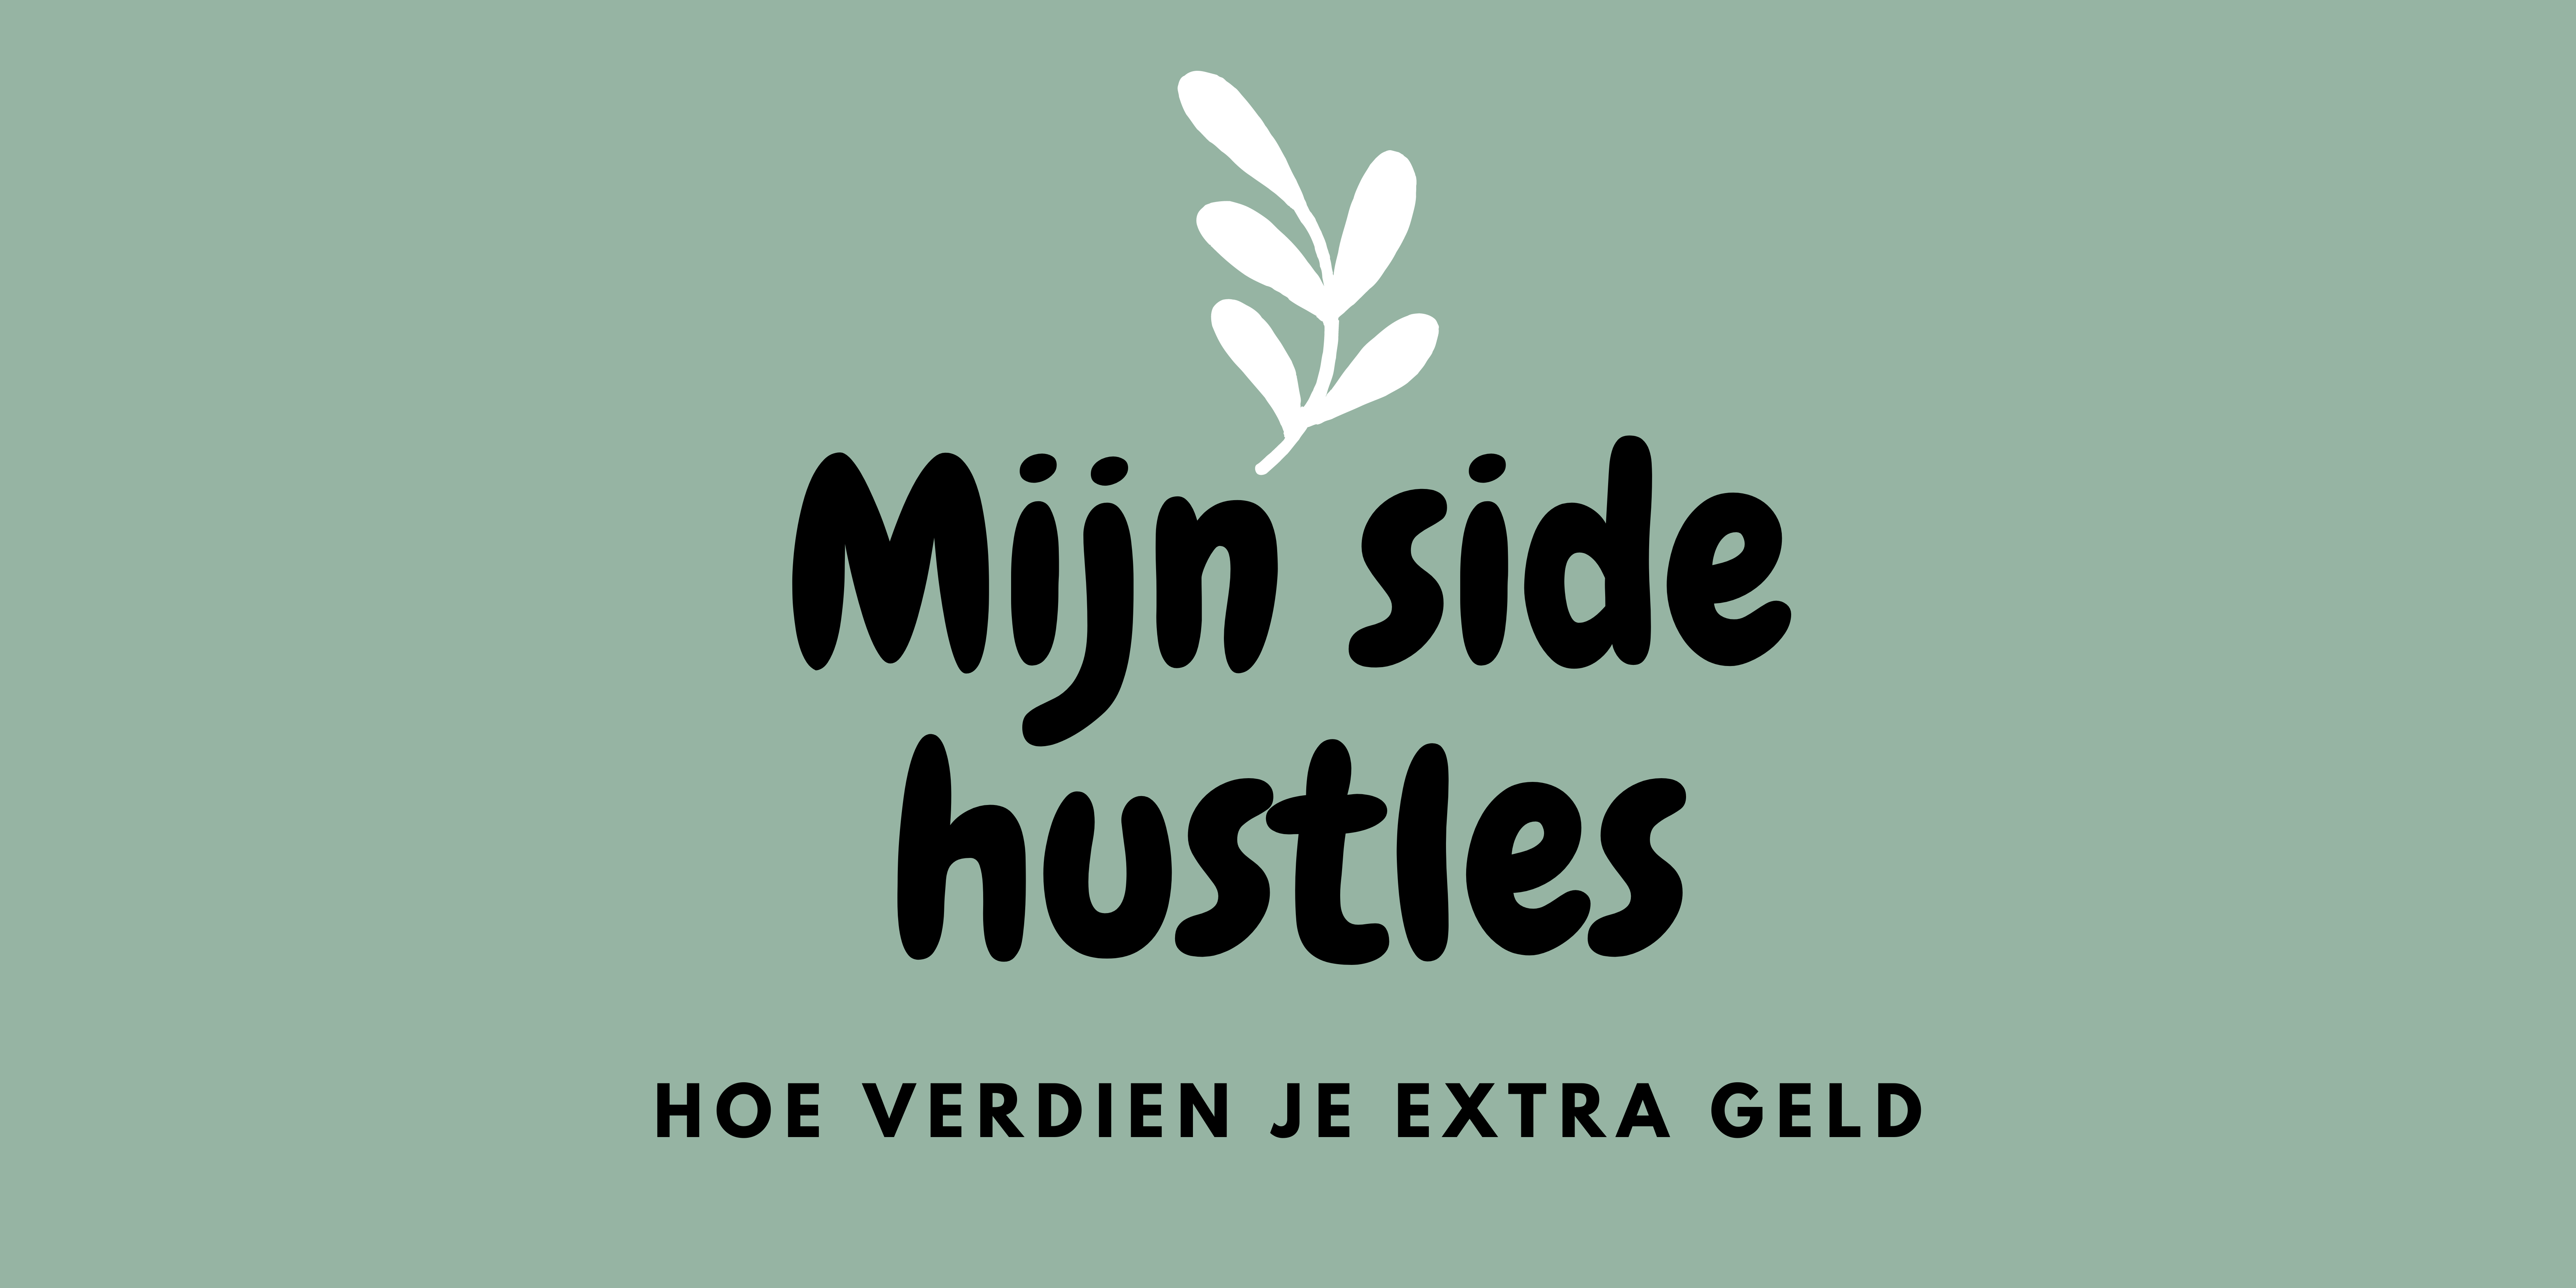 Side hustle tips. Hoe verdien ik extra geld?